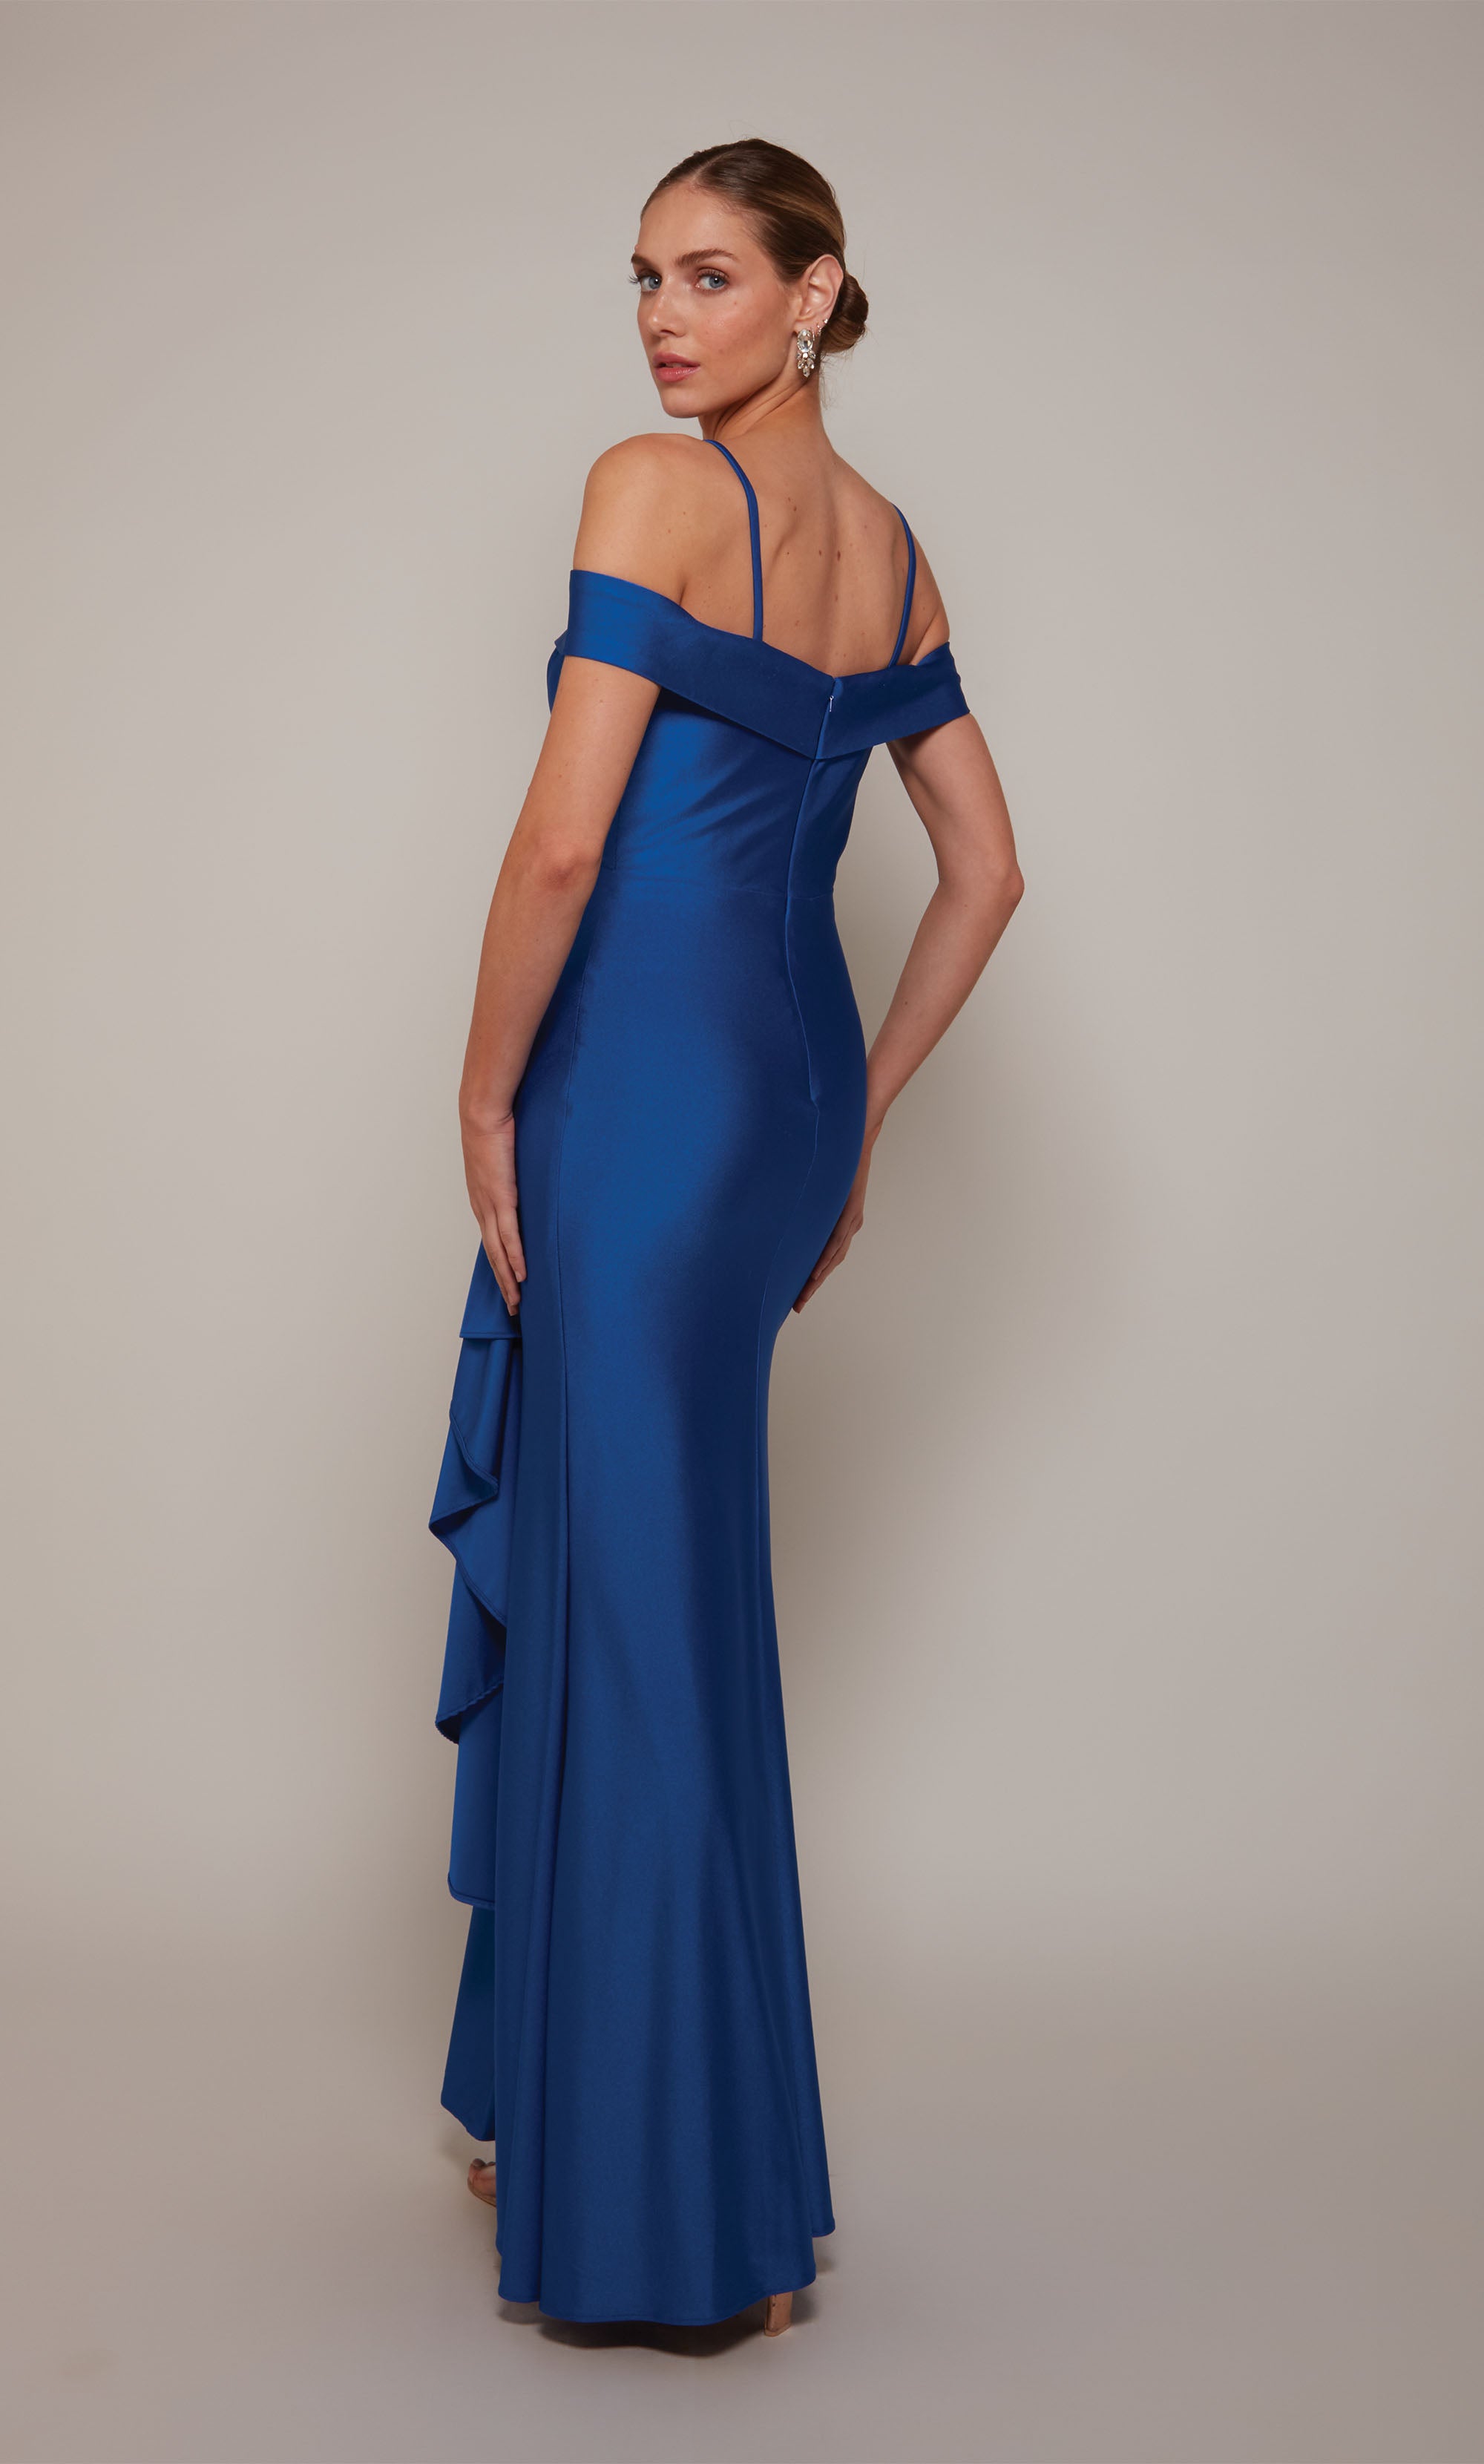 Royal Blue Off Shoulder High Slit Formal Dress Evening Gown (00163544) -  eDressit